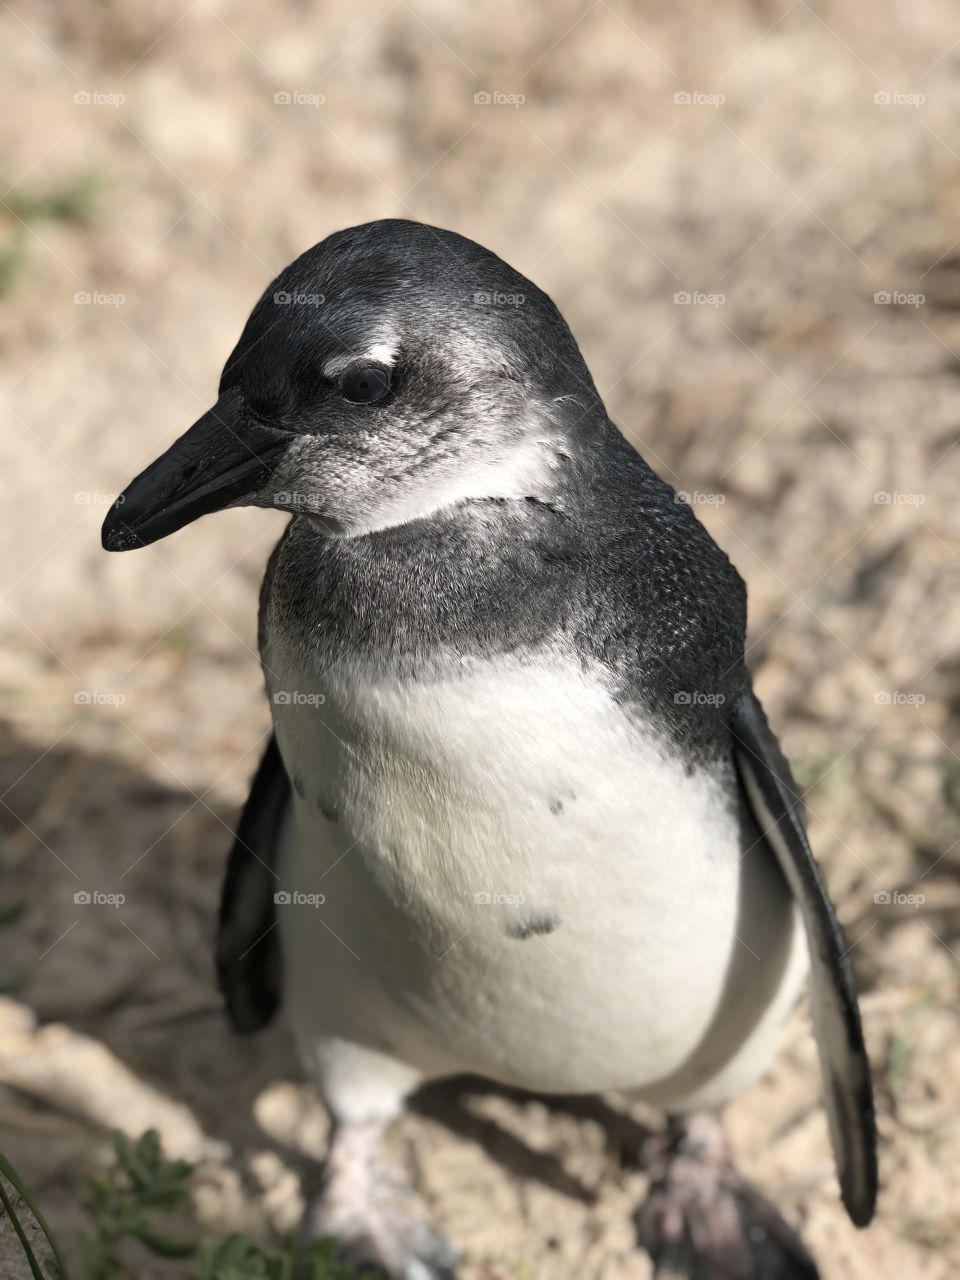 Cute penguin in Cape Town